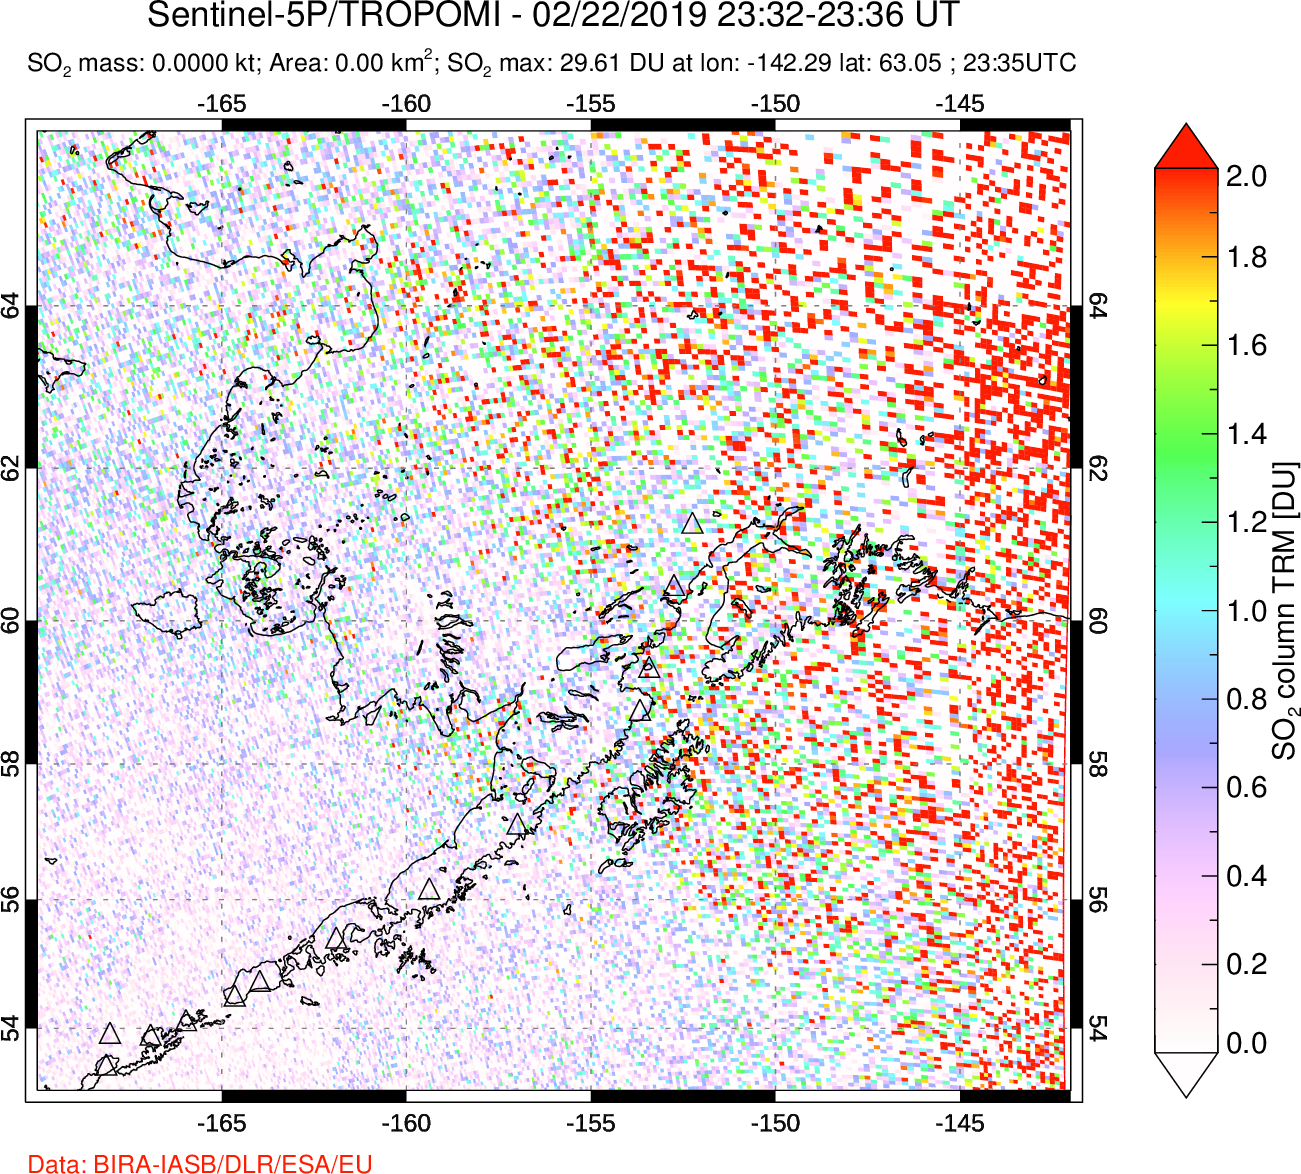 A sulfur dioxide image over Alaska, USA on Feb 22, 2019.